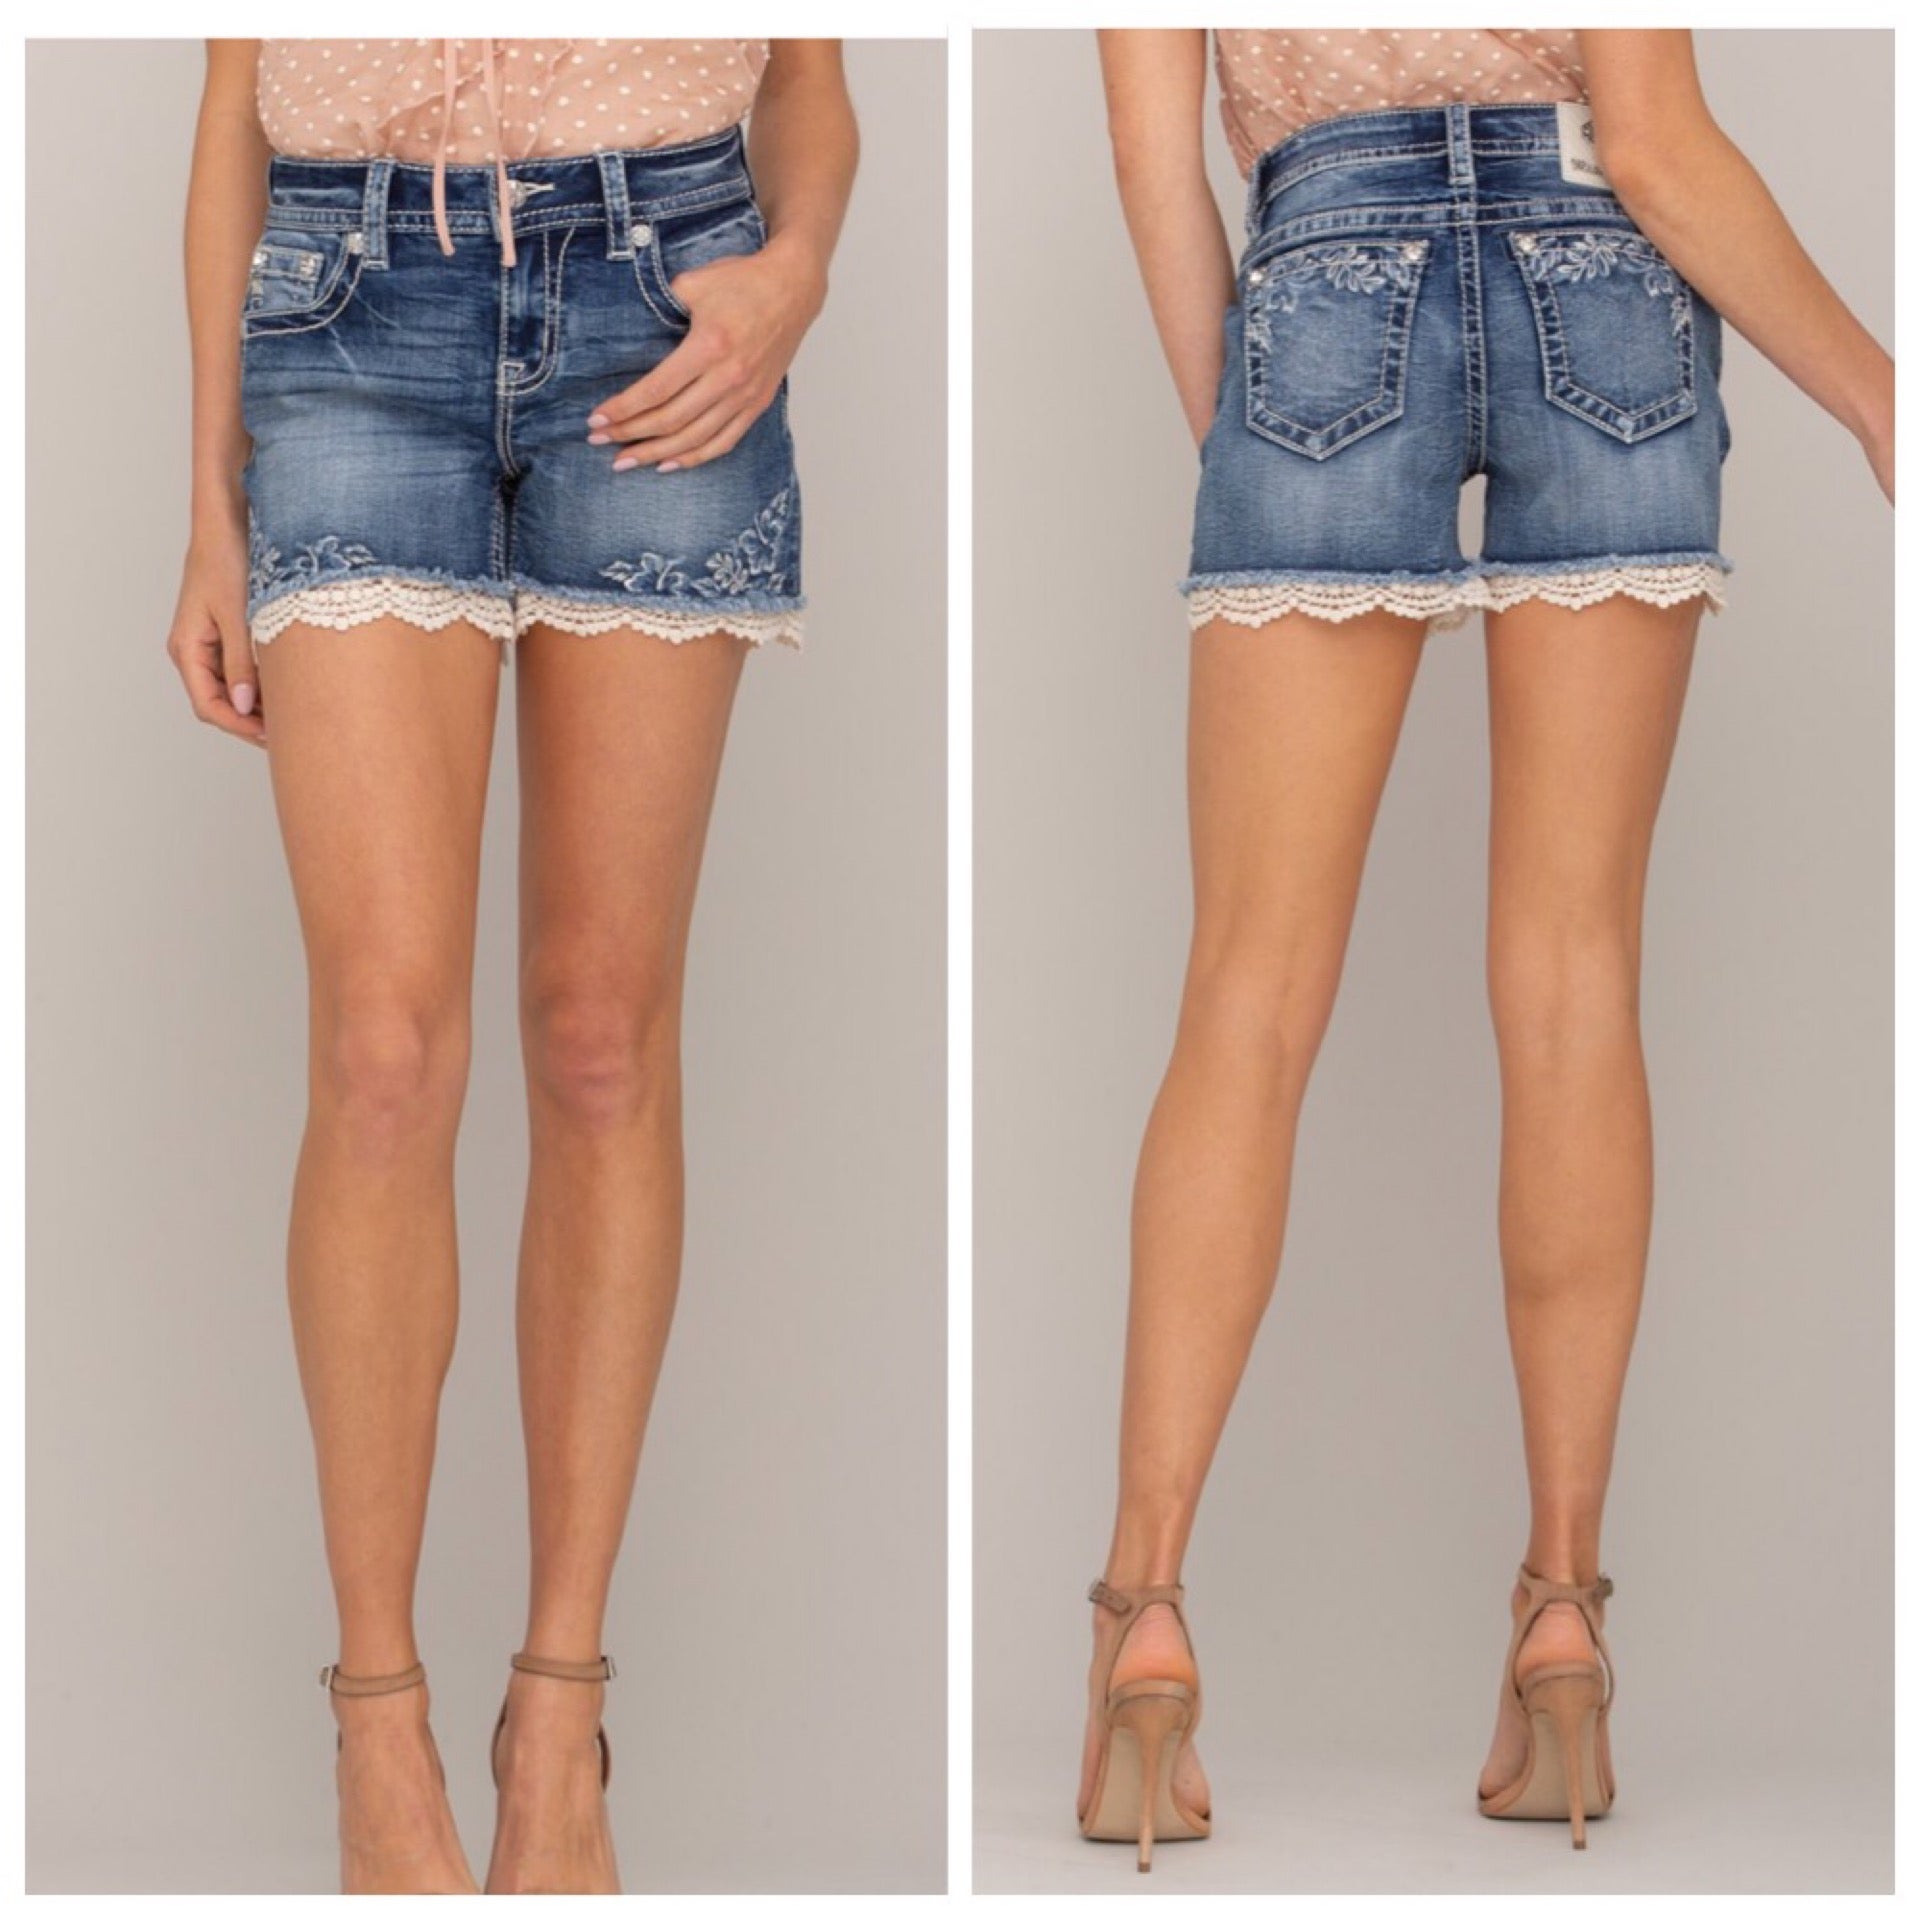 9 Shorts with lace trim ideas  shorts, lace trim, lace denim shorts